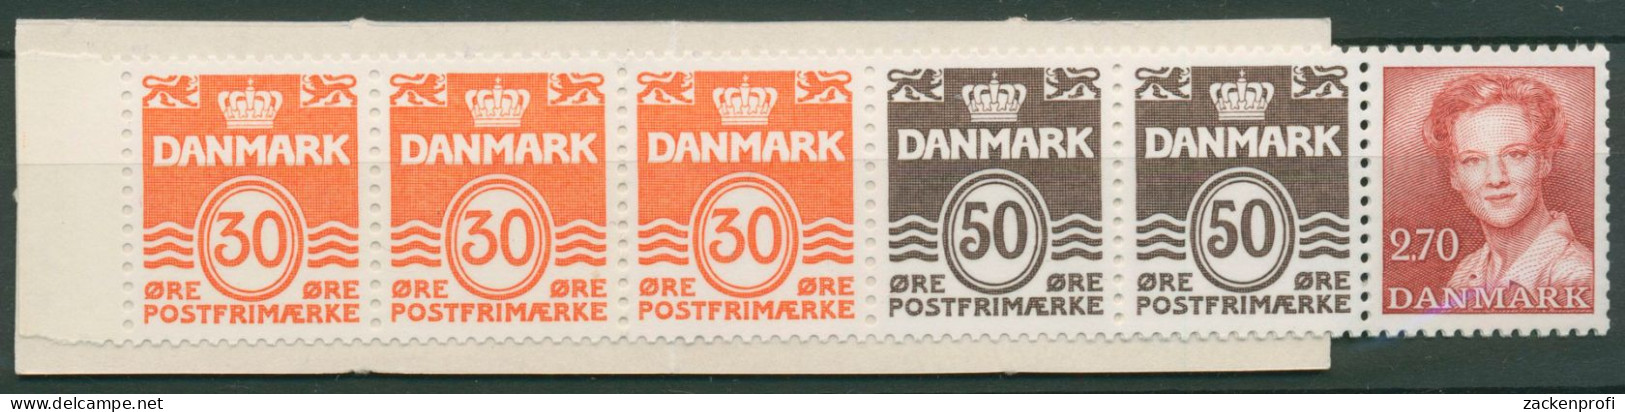 Dänemark 1984 Ziffern/Königin Markenheftchen MH 32 Postfrisch (C60838) - Carnets